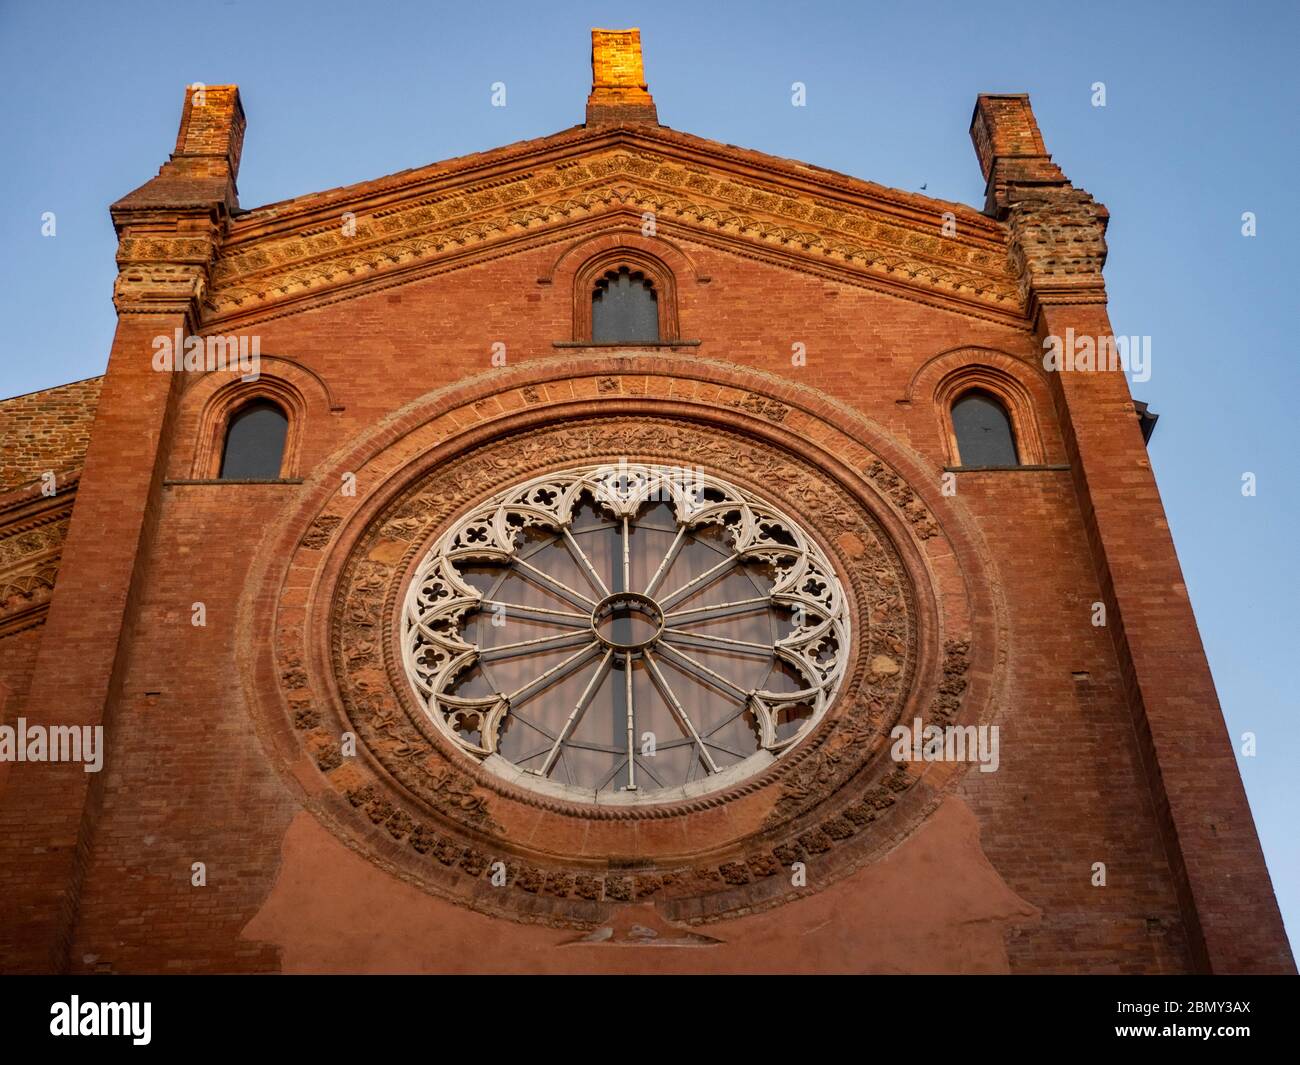 Facade of San Tommaso church in Pavia, Lombardy, Italy Stock Photo